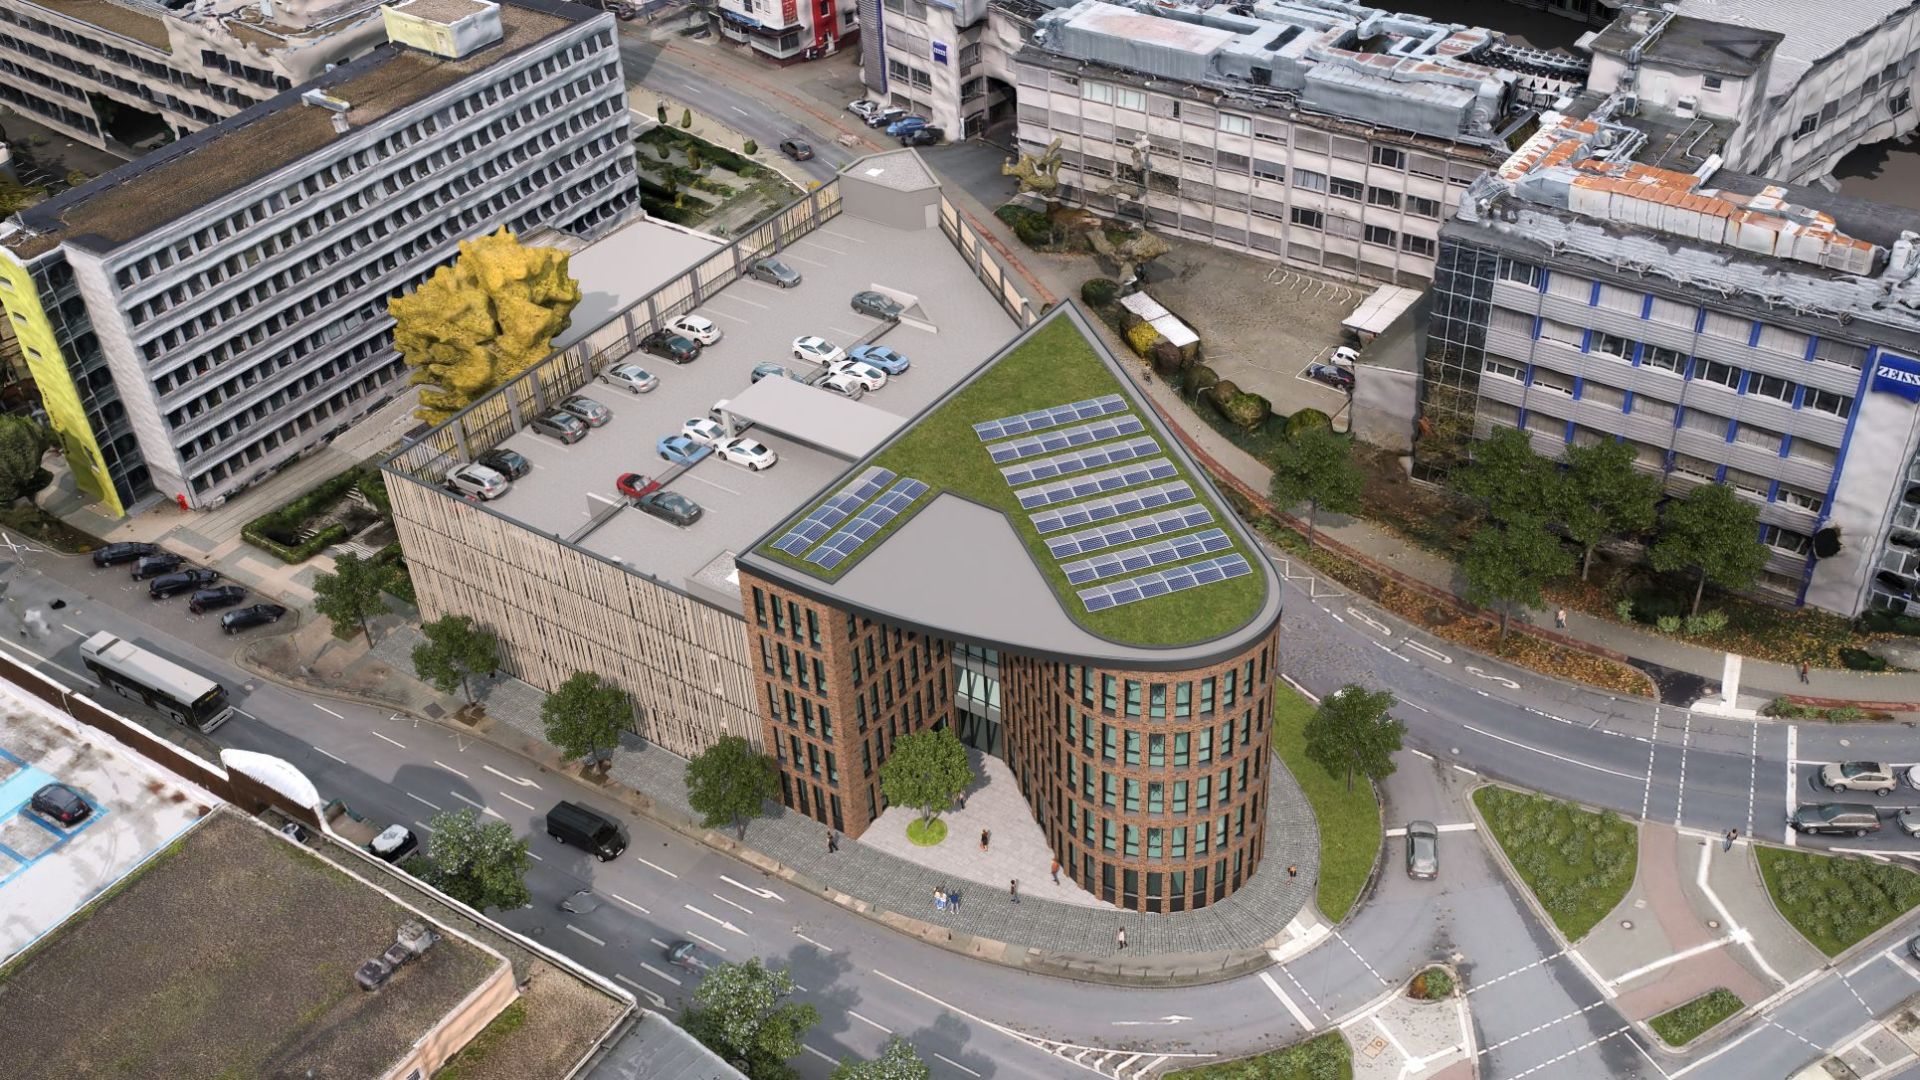 Das Dach des neuen Rundbaus am Buderusplatz wird begrünt und mit einer Fotovoltaikanlage ausgestattet. (Visualisierung: KuBuS generalplanungs gmbh)